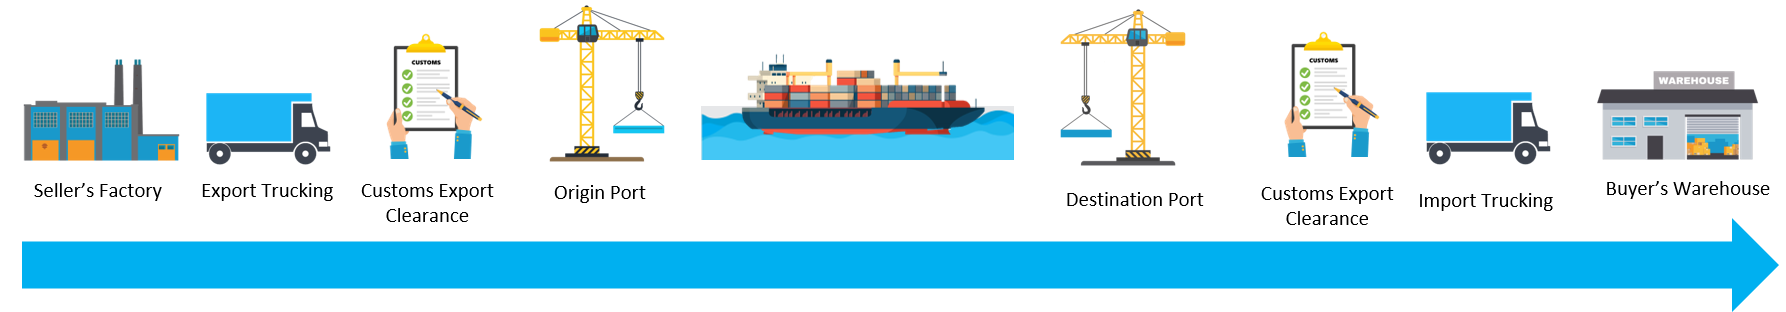 International shipping process